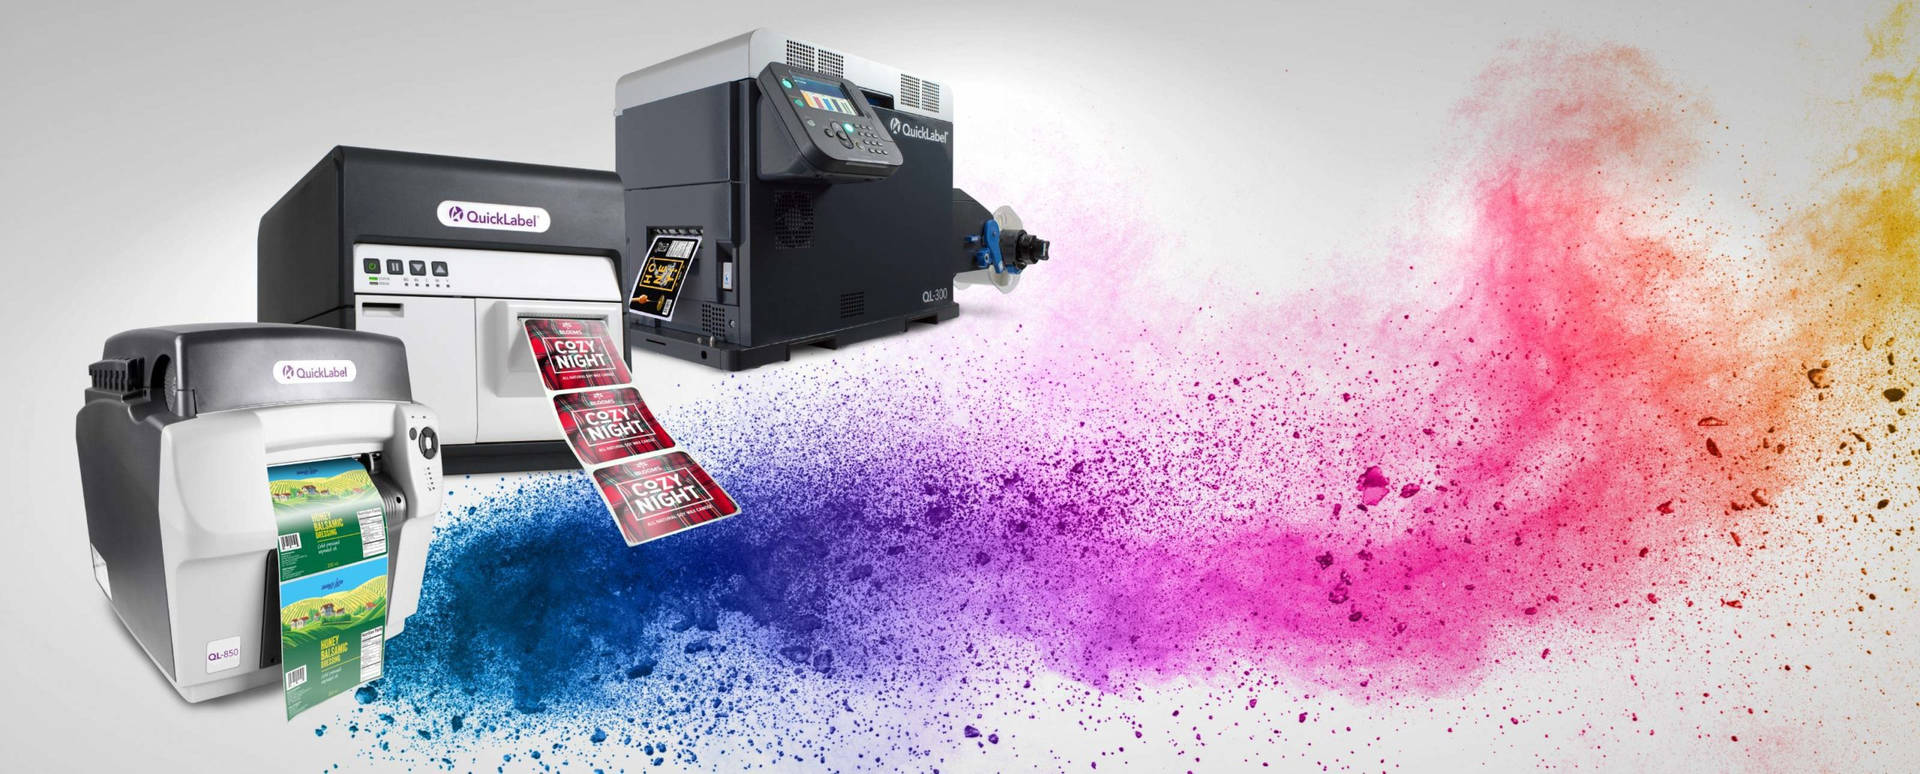 Printer Colorful Ink Wallpaper